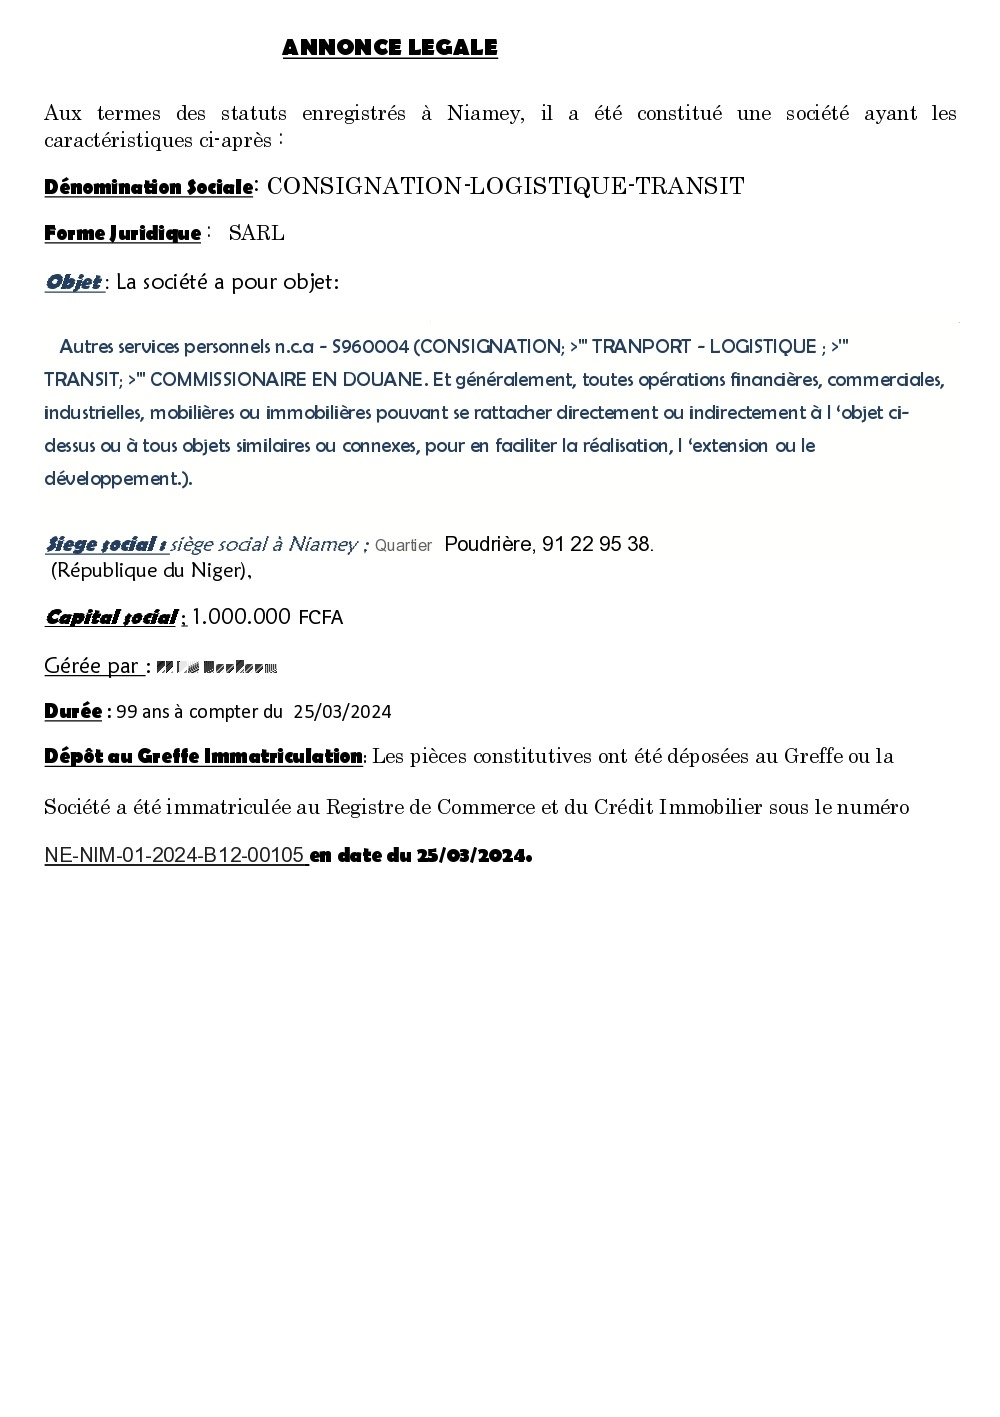 You are currently viewing ANNONCE LEGALE : AVIS DE CONSTITUTION DE SOCIETE